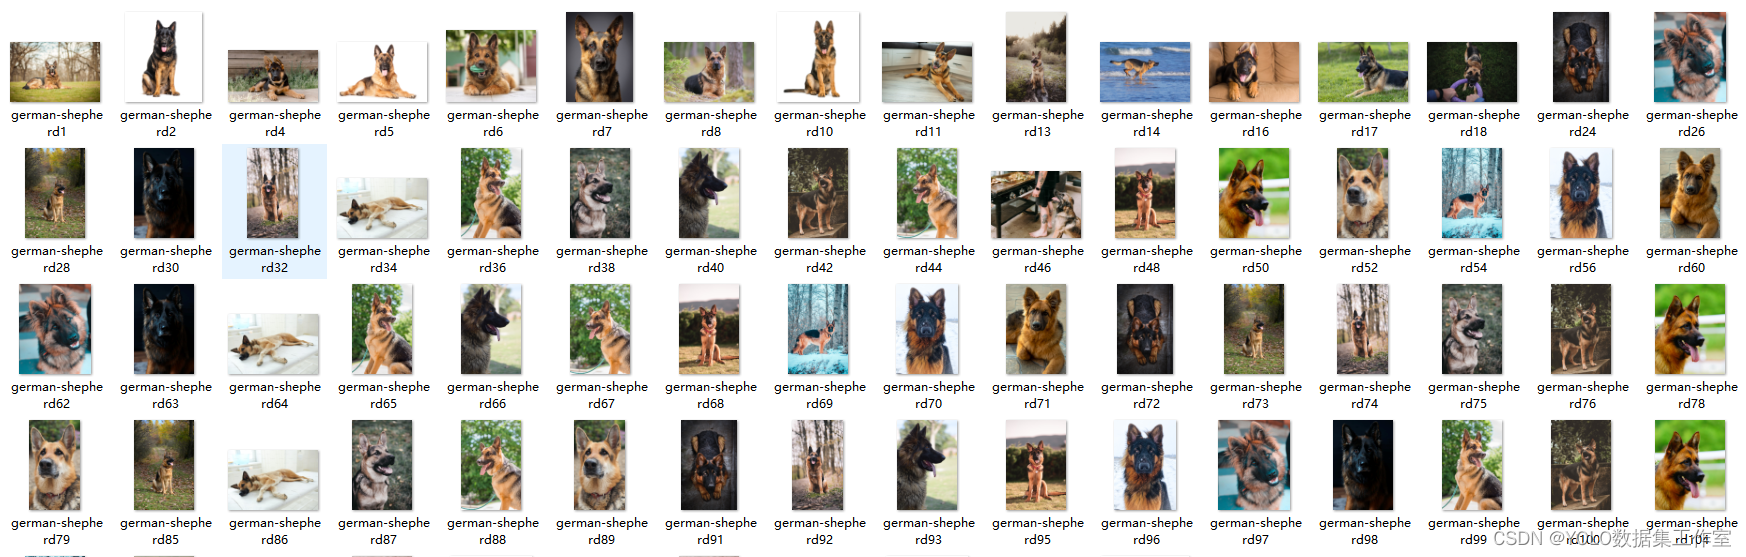 YOLO目标检测——小狗图像数据集下载分享